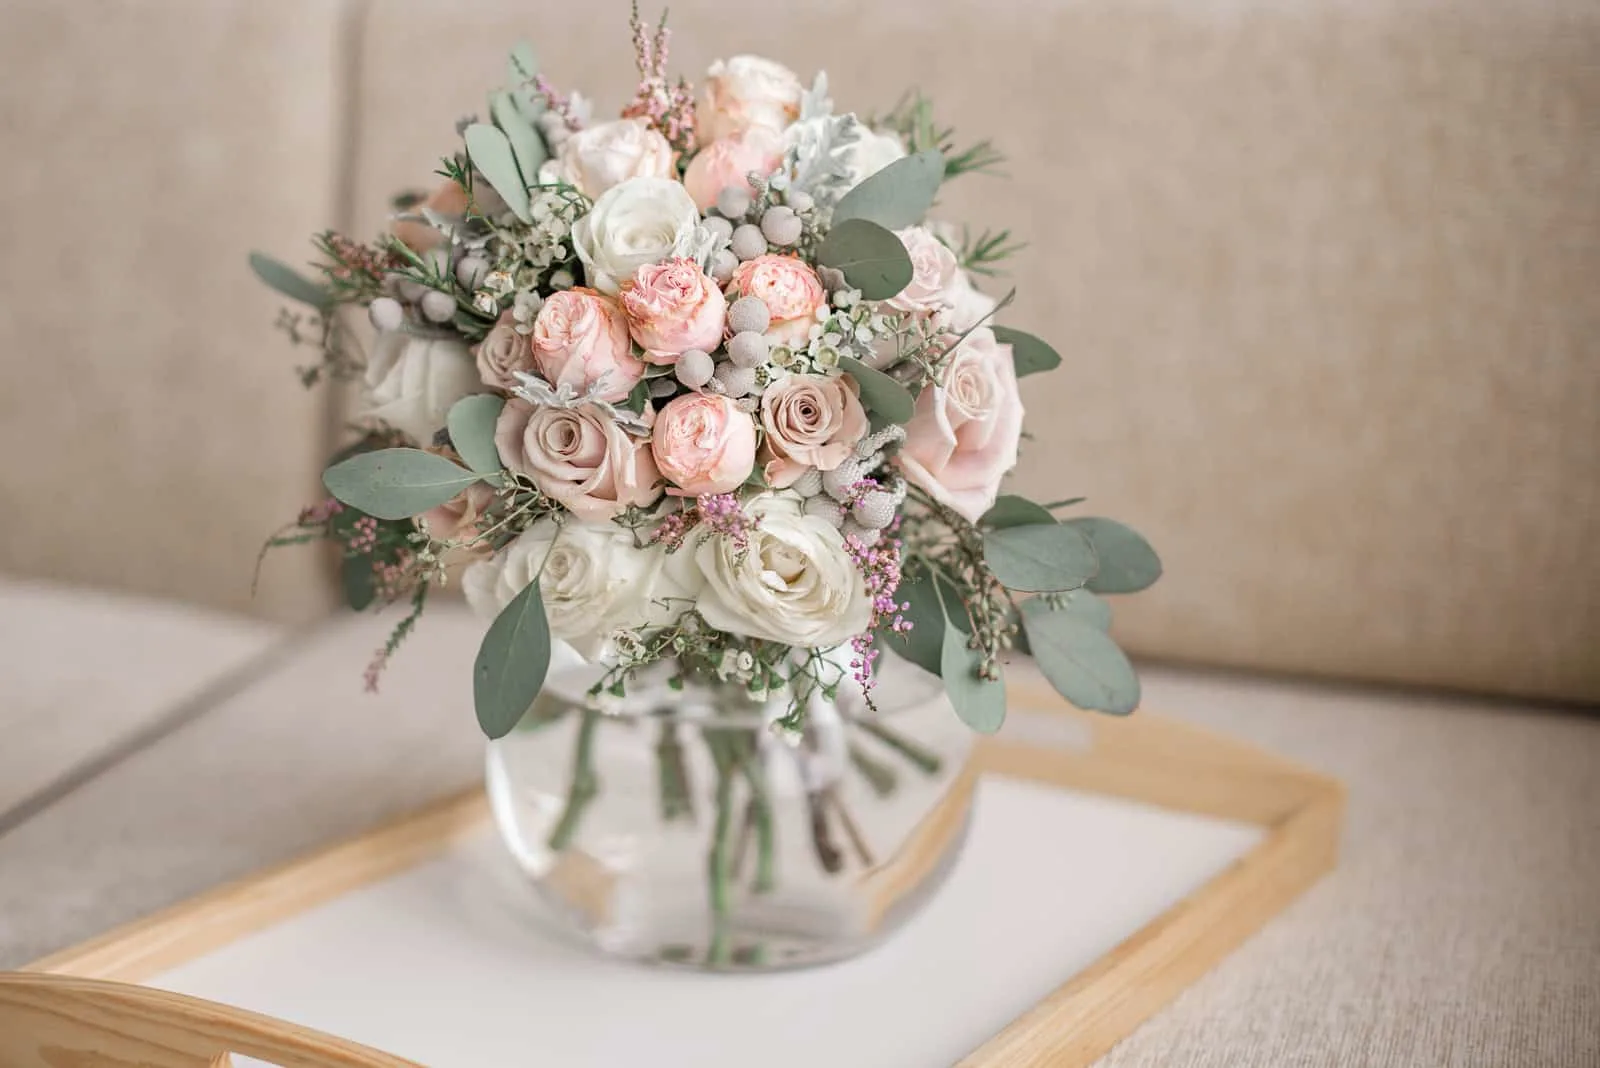 ein schöner Hochzeitsstrauß von Rosen in einer Vase auf dem Tisch